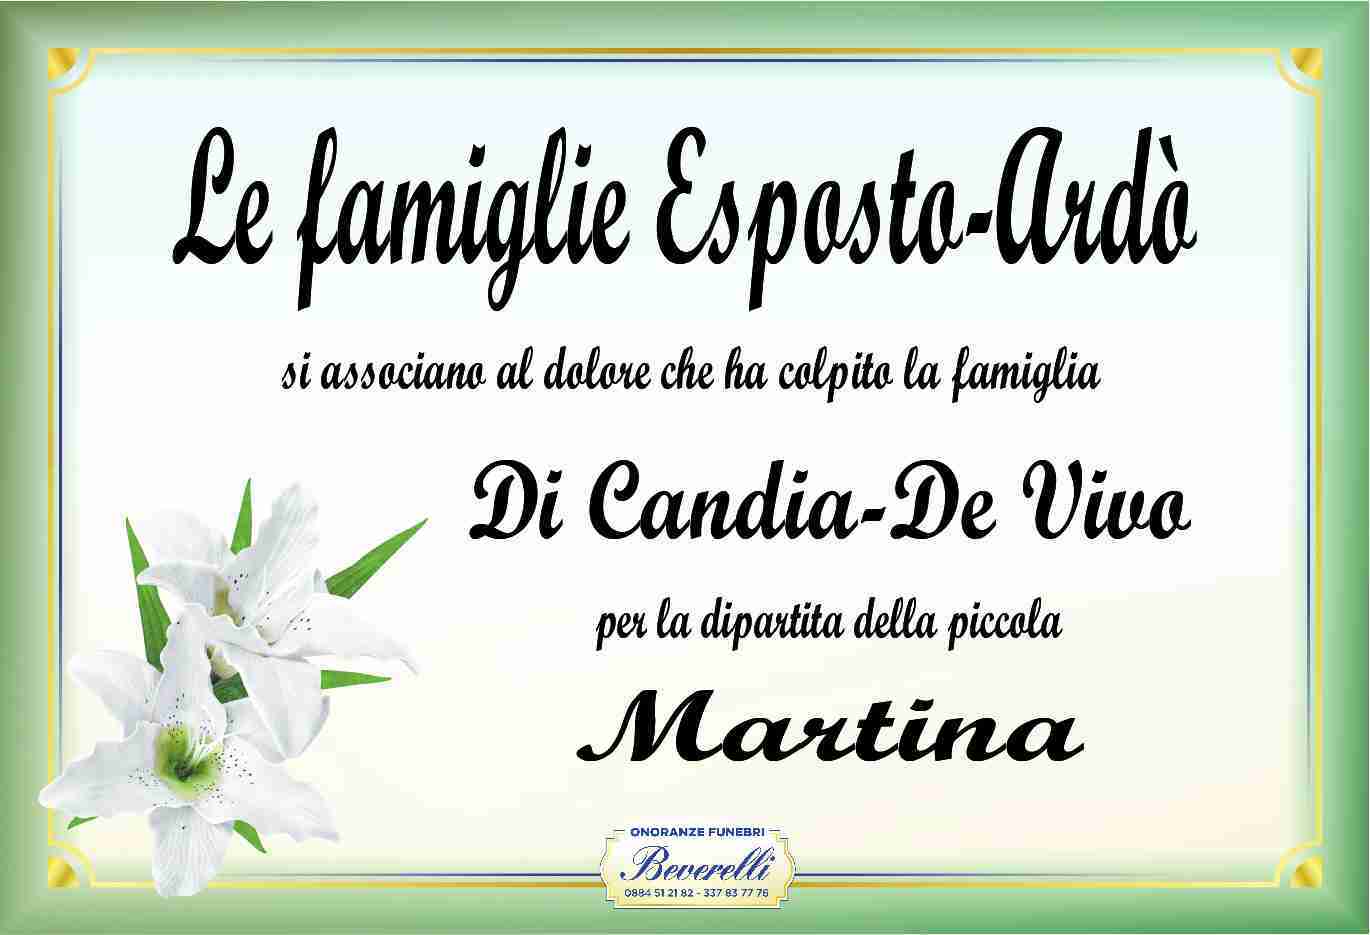 Martina Di Candia